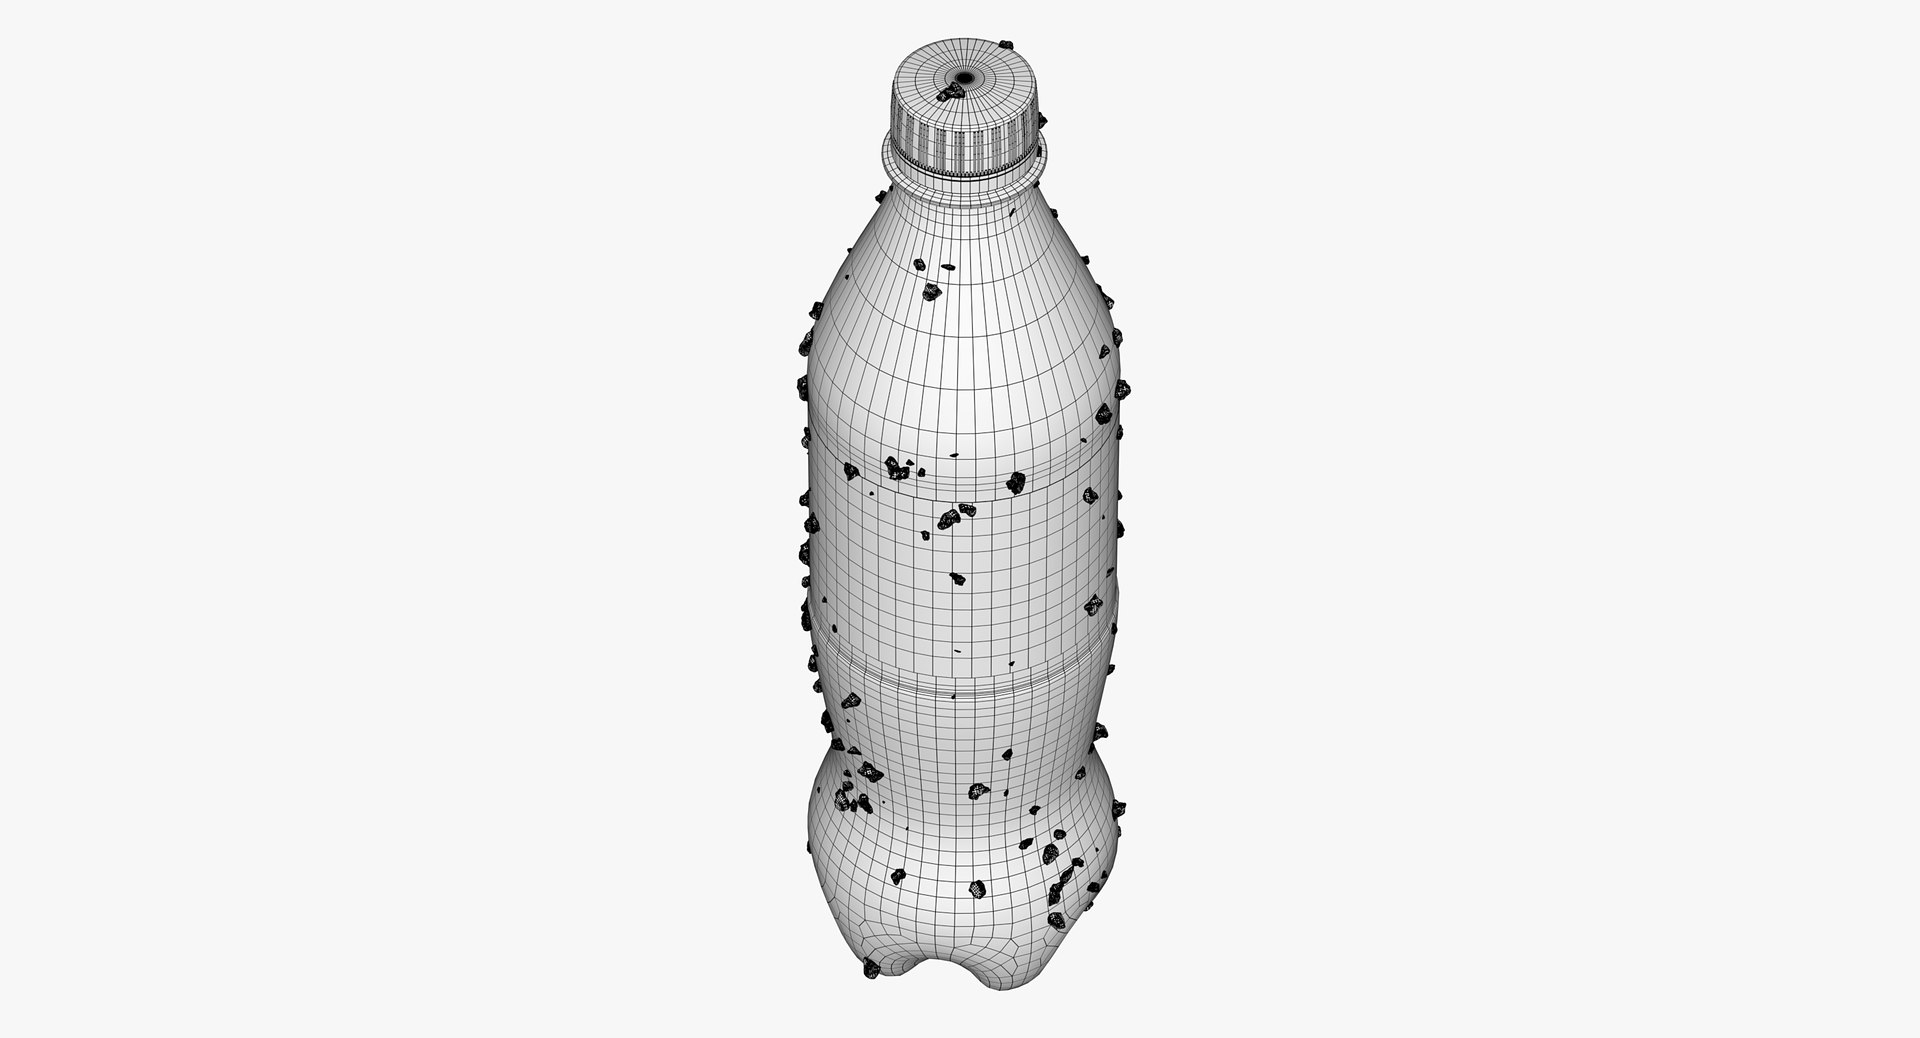 Coca-Cola Plastic Bottle 3D model - TurboSquid 1755675